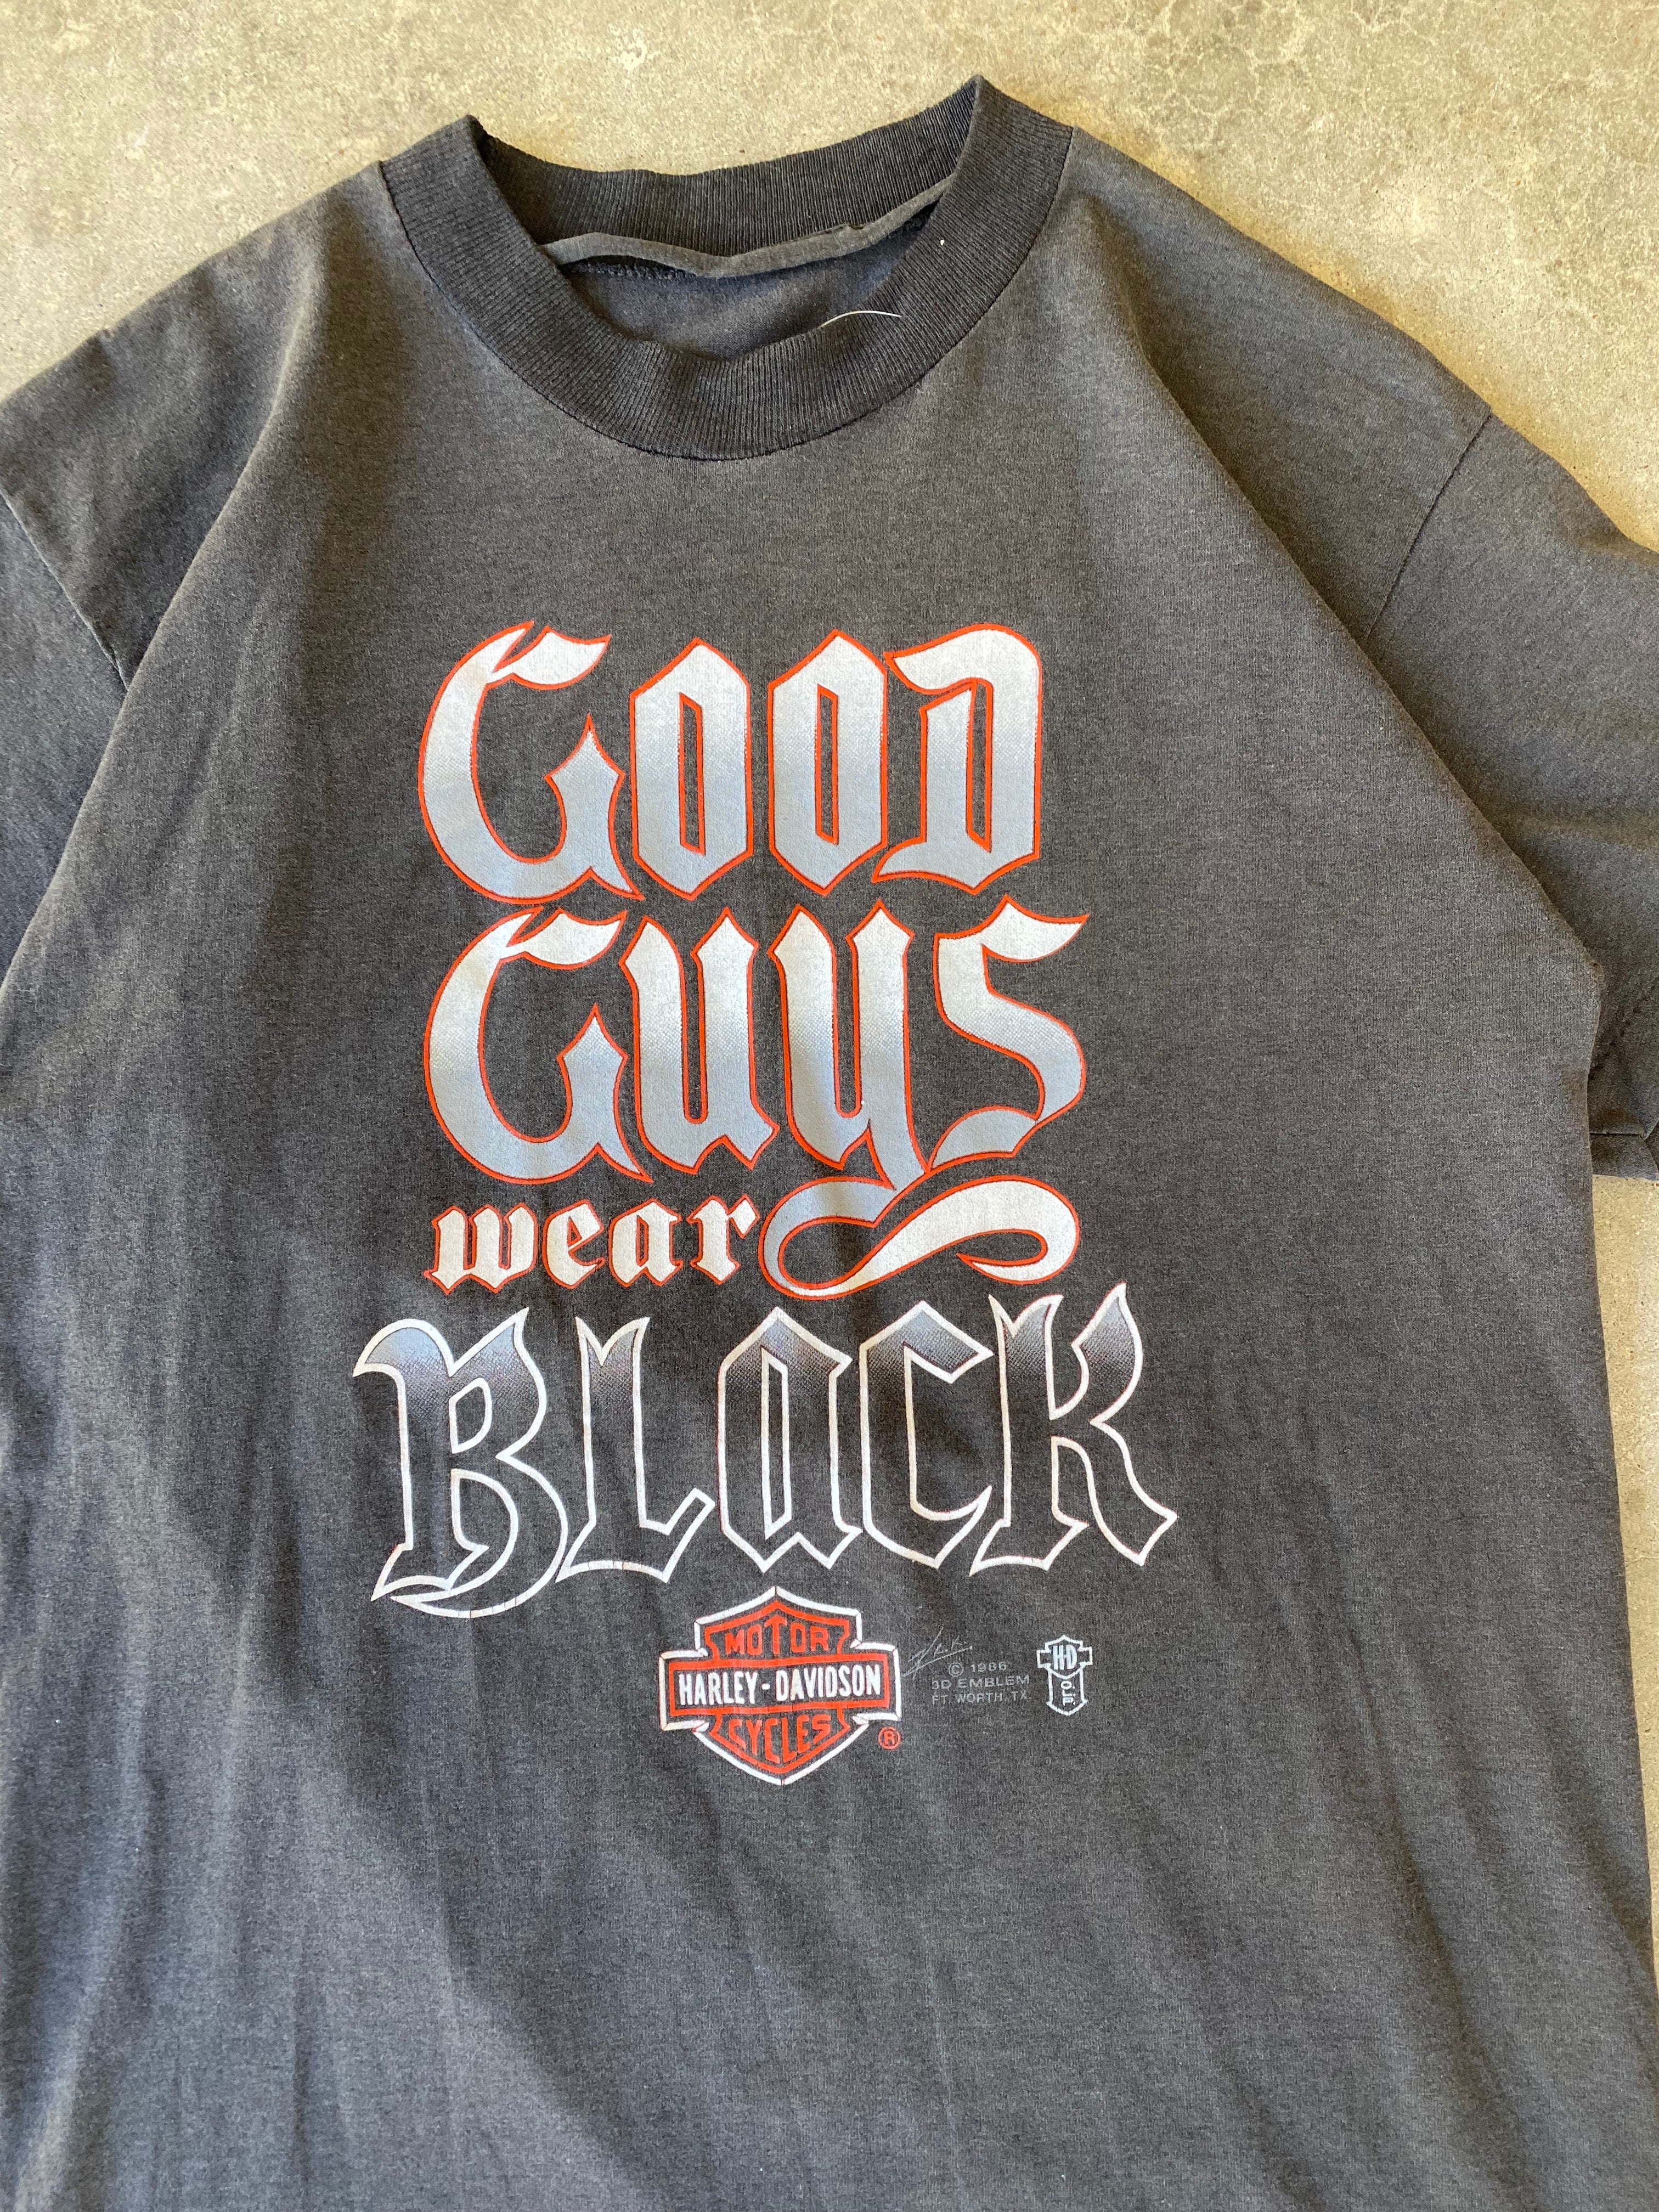 1986 Harley Davidson 3D Emblem "Good Guys Wear Black" T-Shirt (S/M)